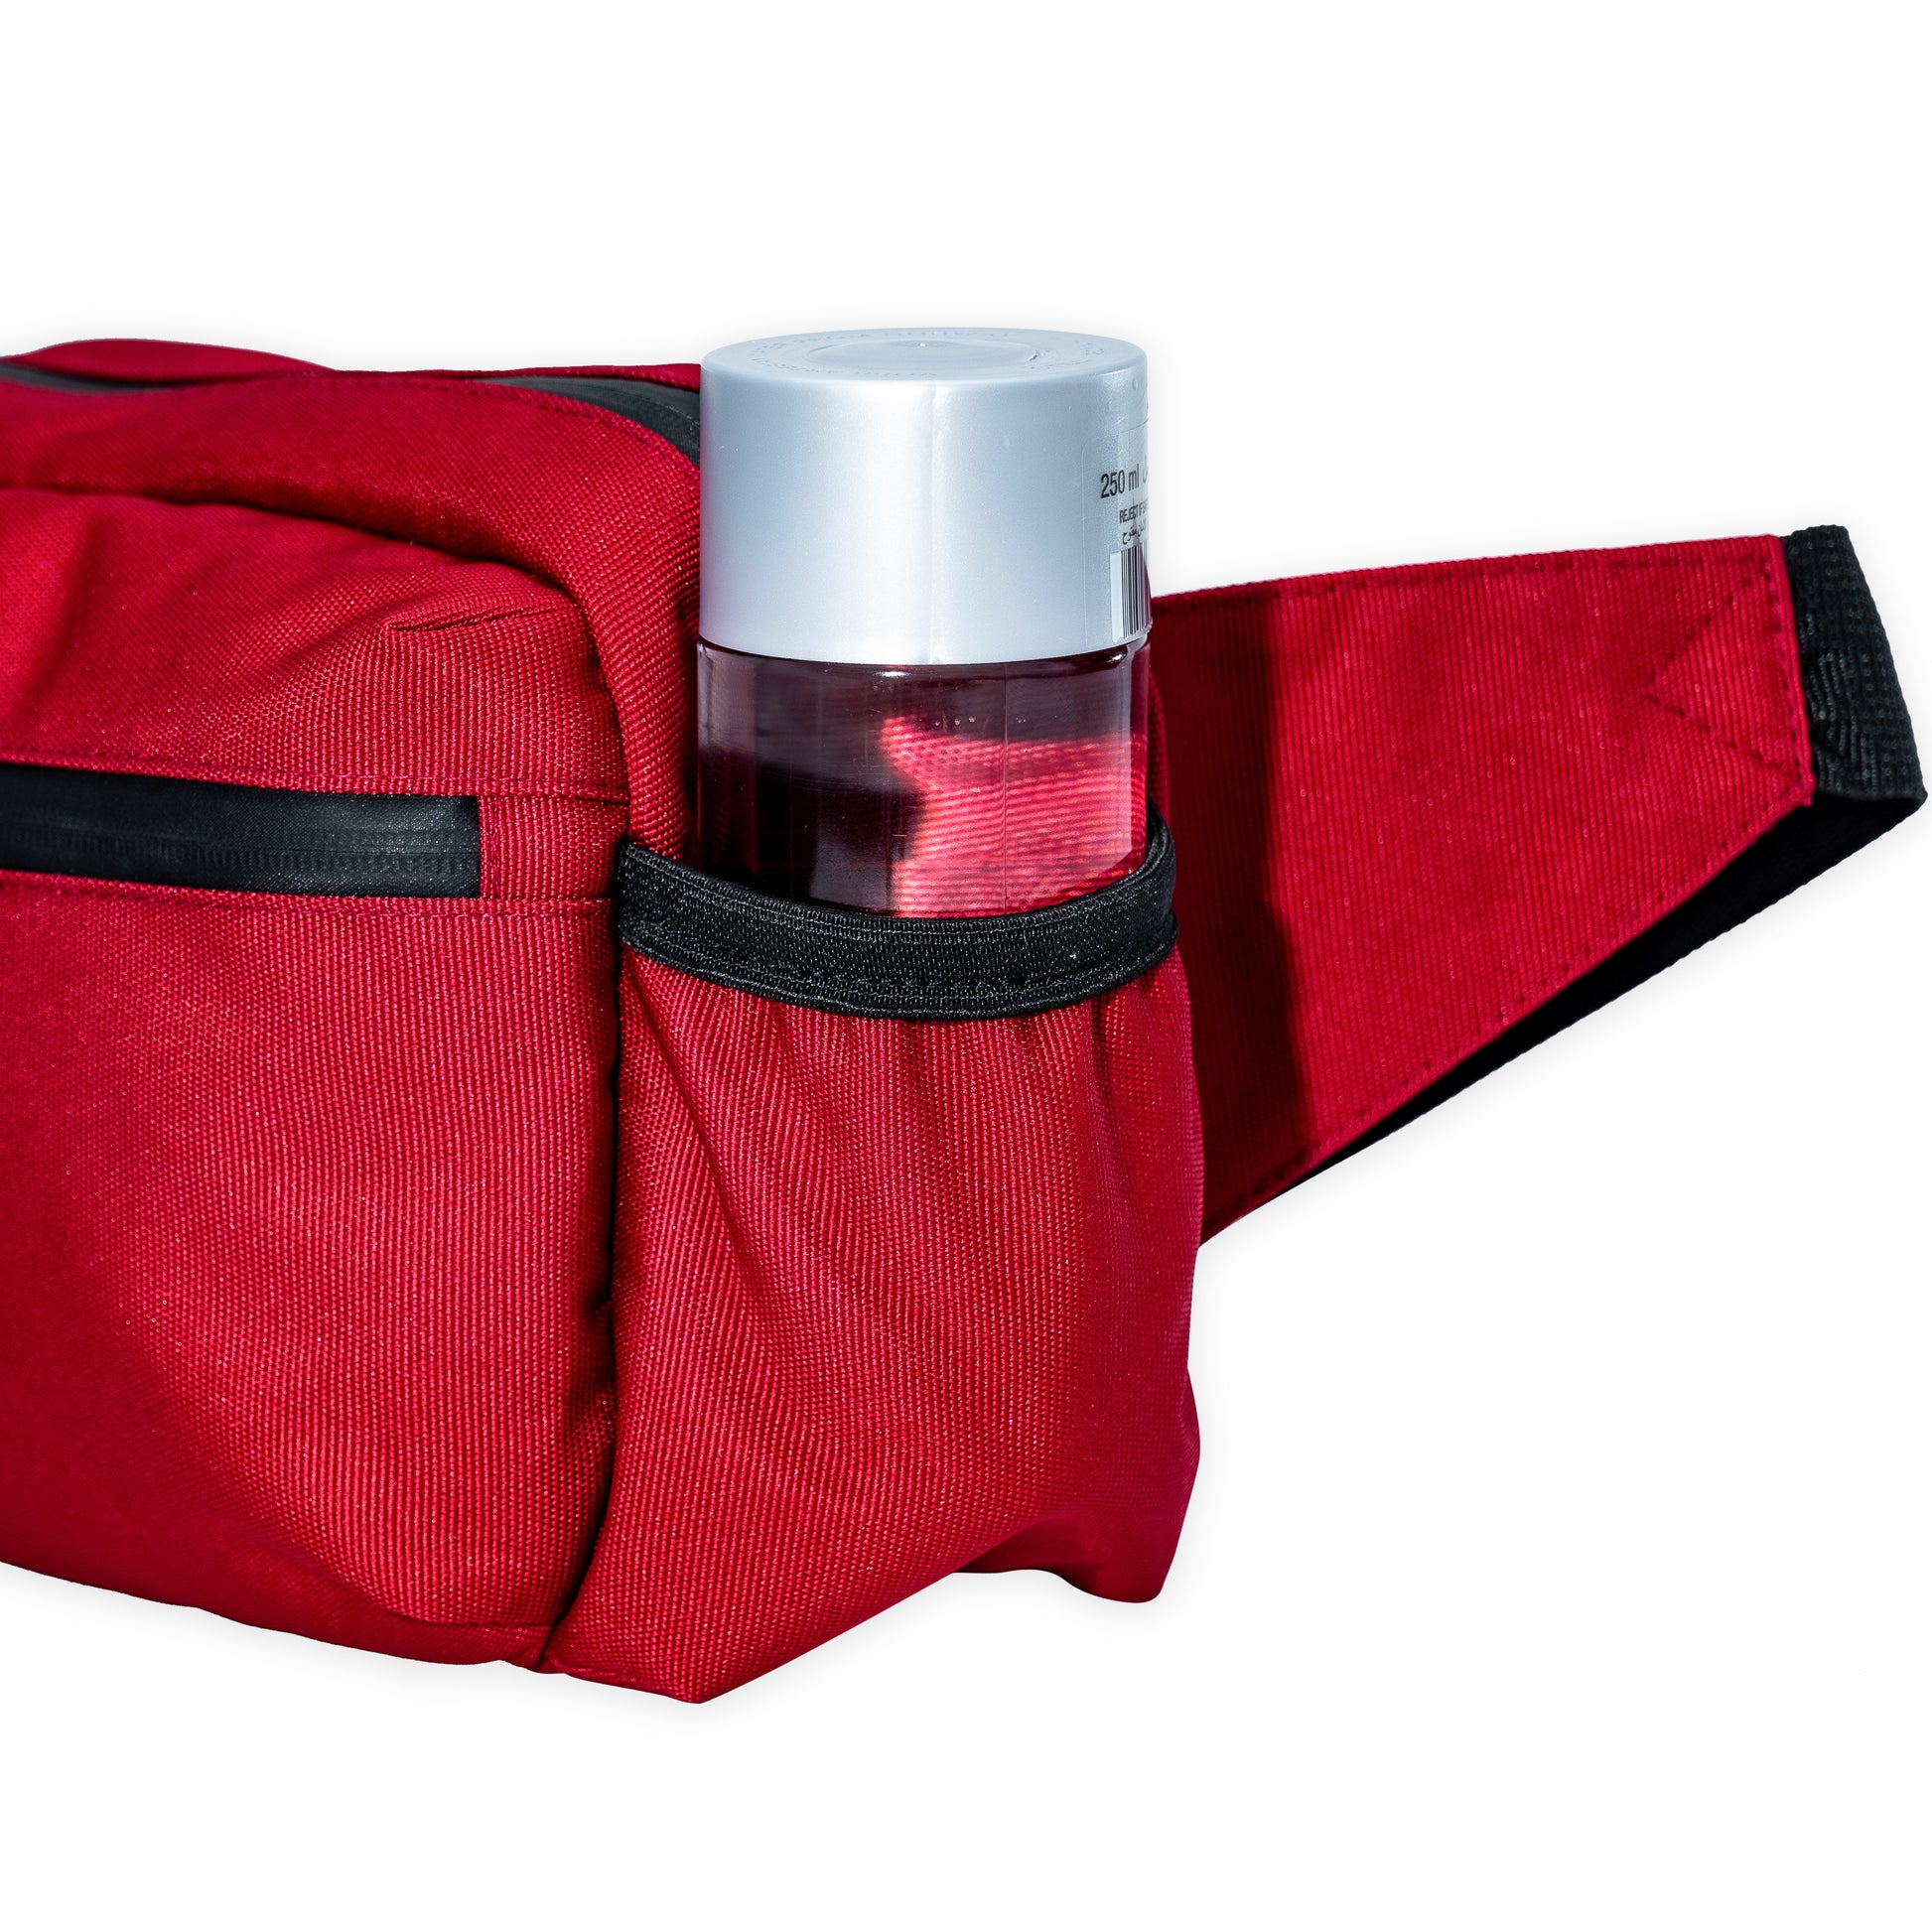 red belt bag with side water bottle pockets